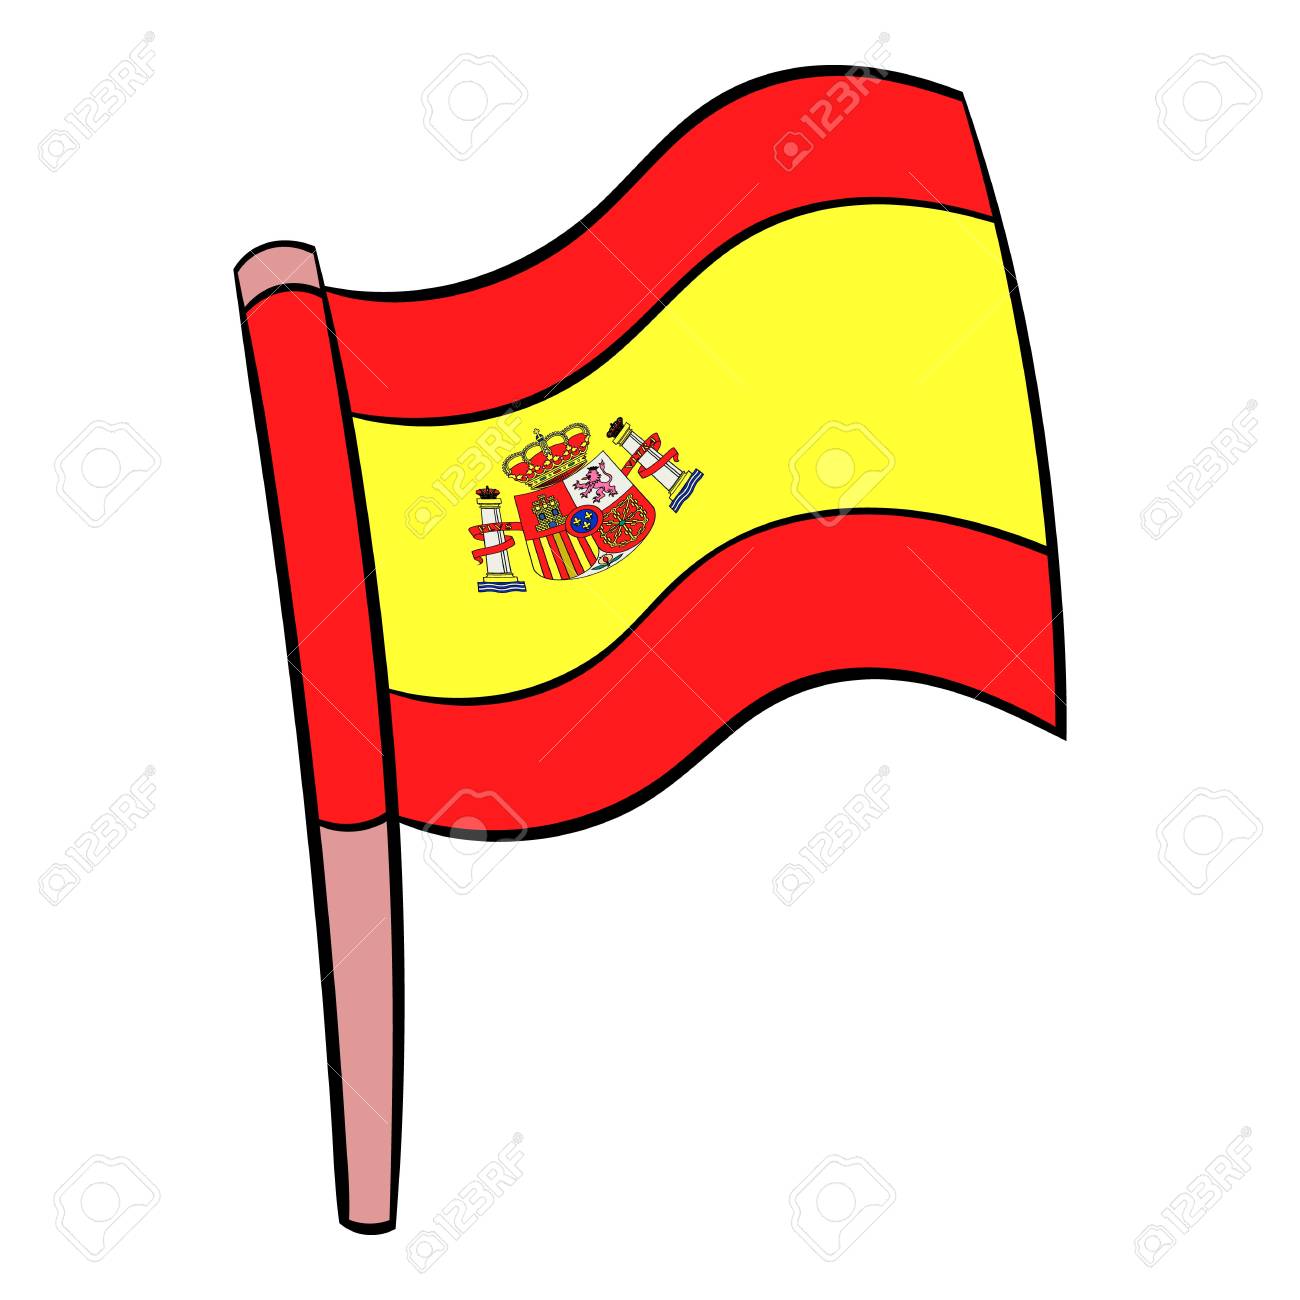 Flag of Spain icon cartoon